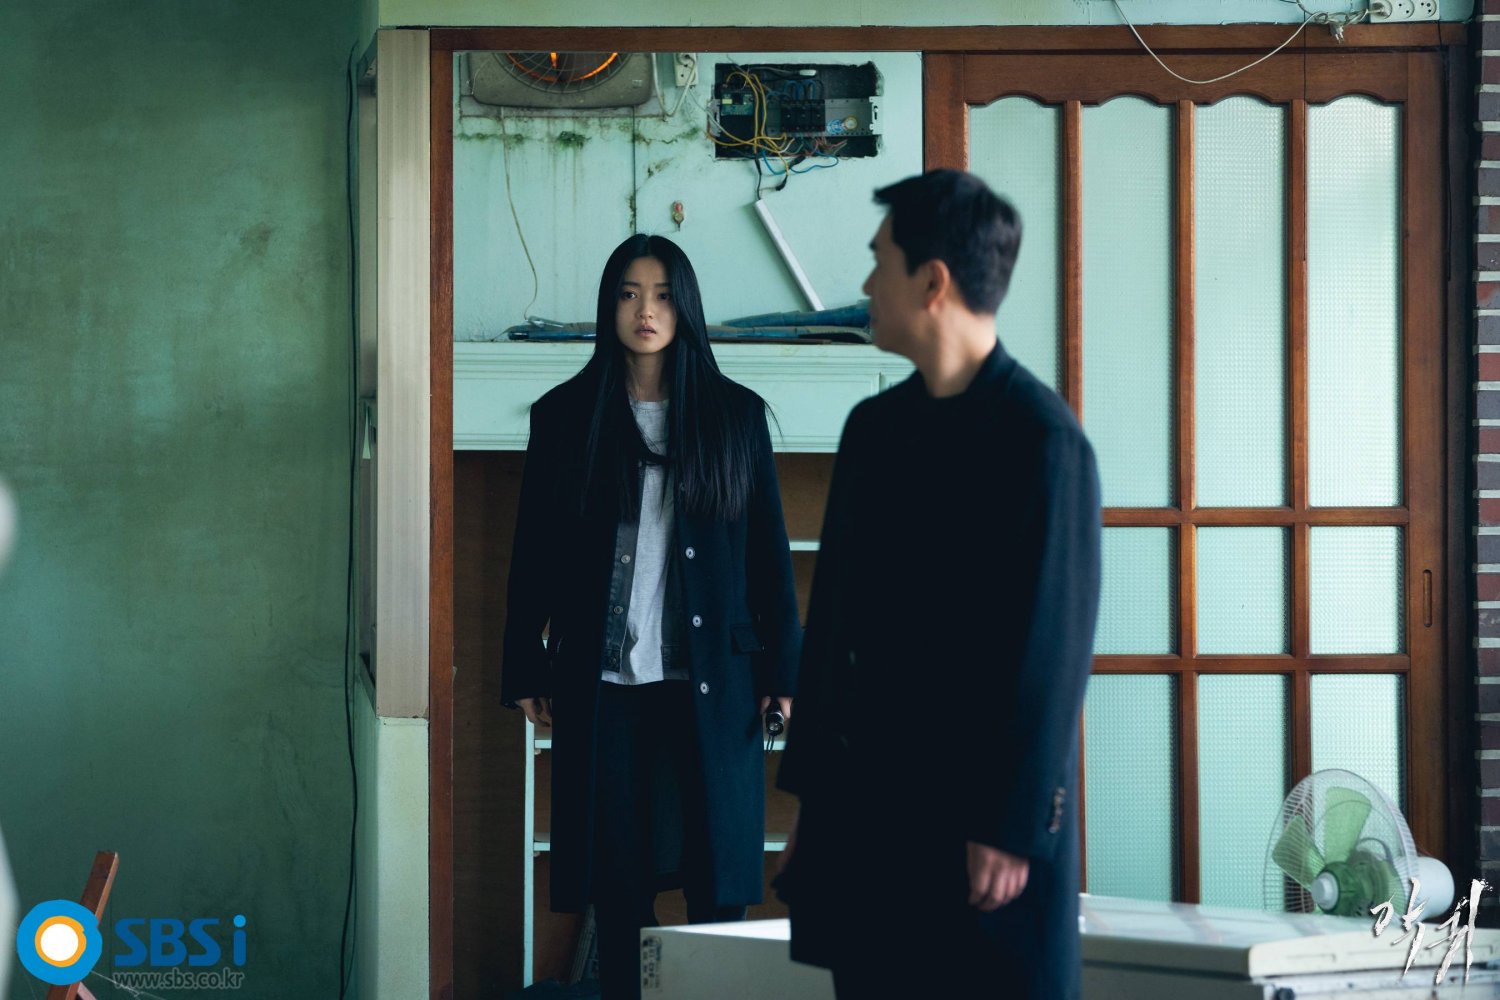 [Photos] New Stills Added for the Korean Drama 'Revenant' @ HanCinema